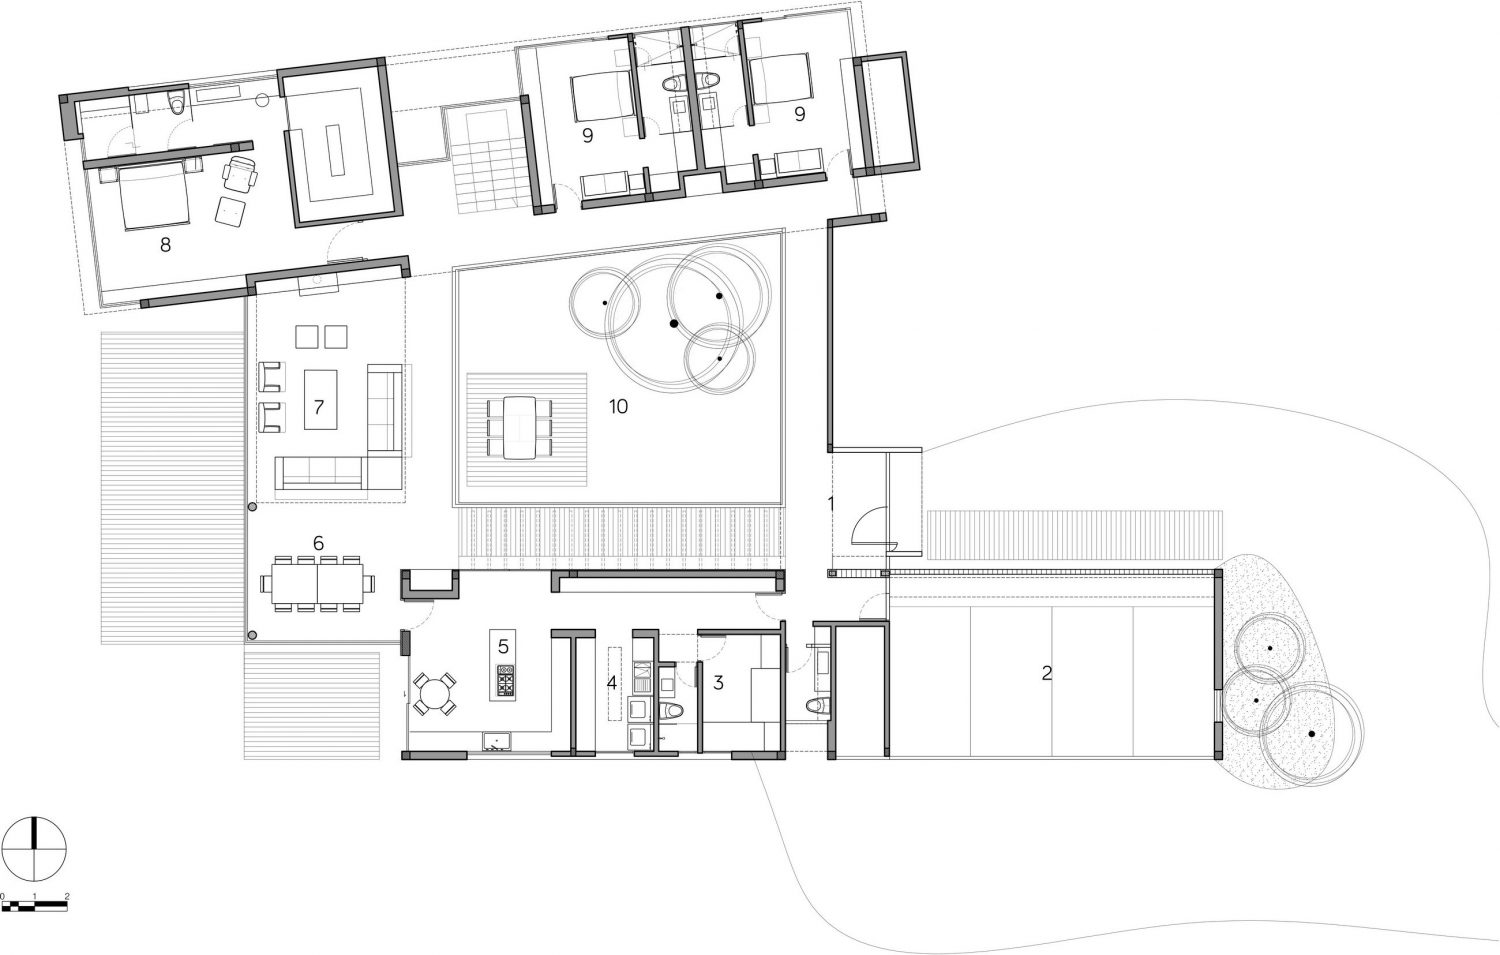 Casa 5 by Arquitectura en Estudio